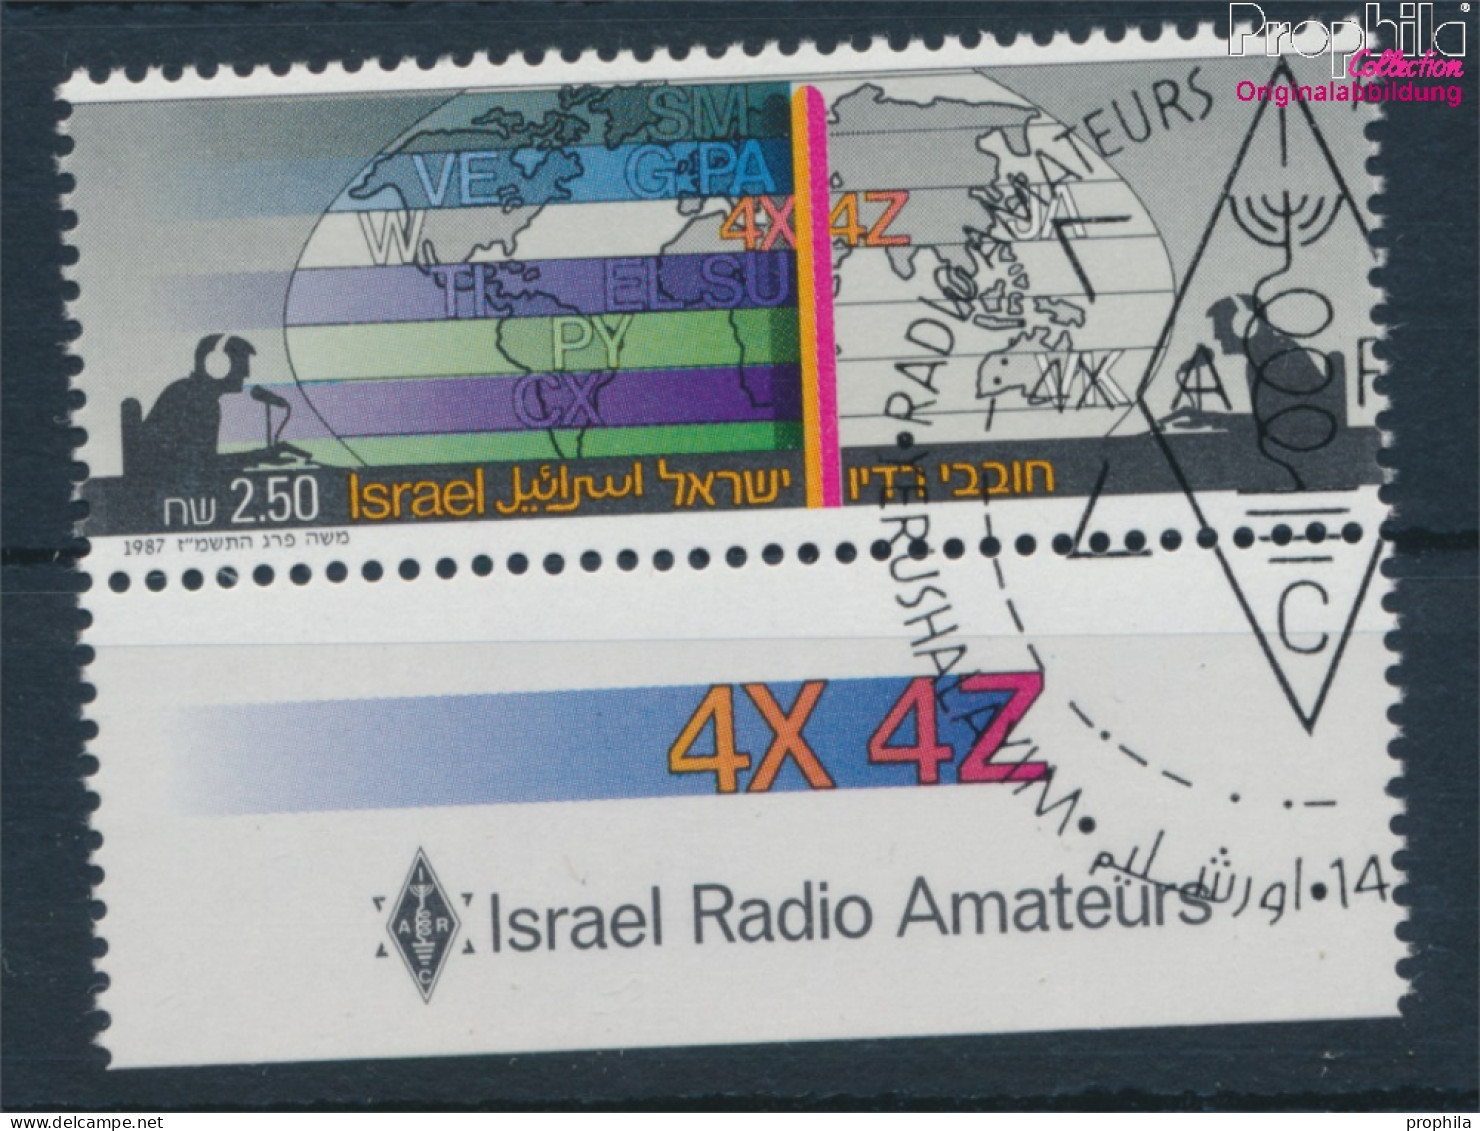 Israel 1063 Mit Tab (kompl.Ausg.) Gestempelt 1987 Radioamateure (10252052 - Oblitérés (avec Tabs)